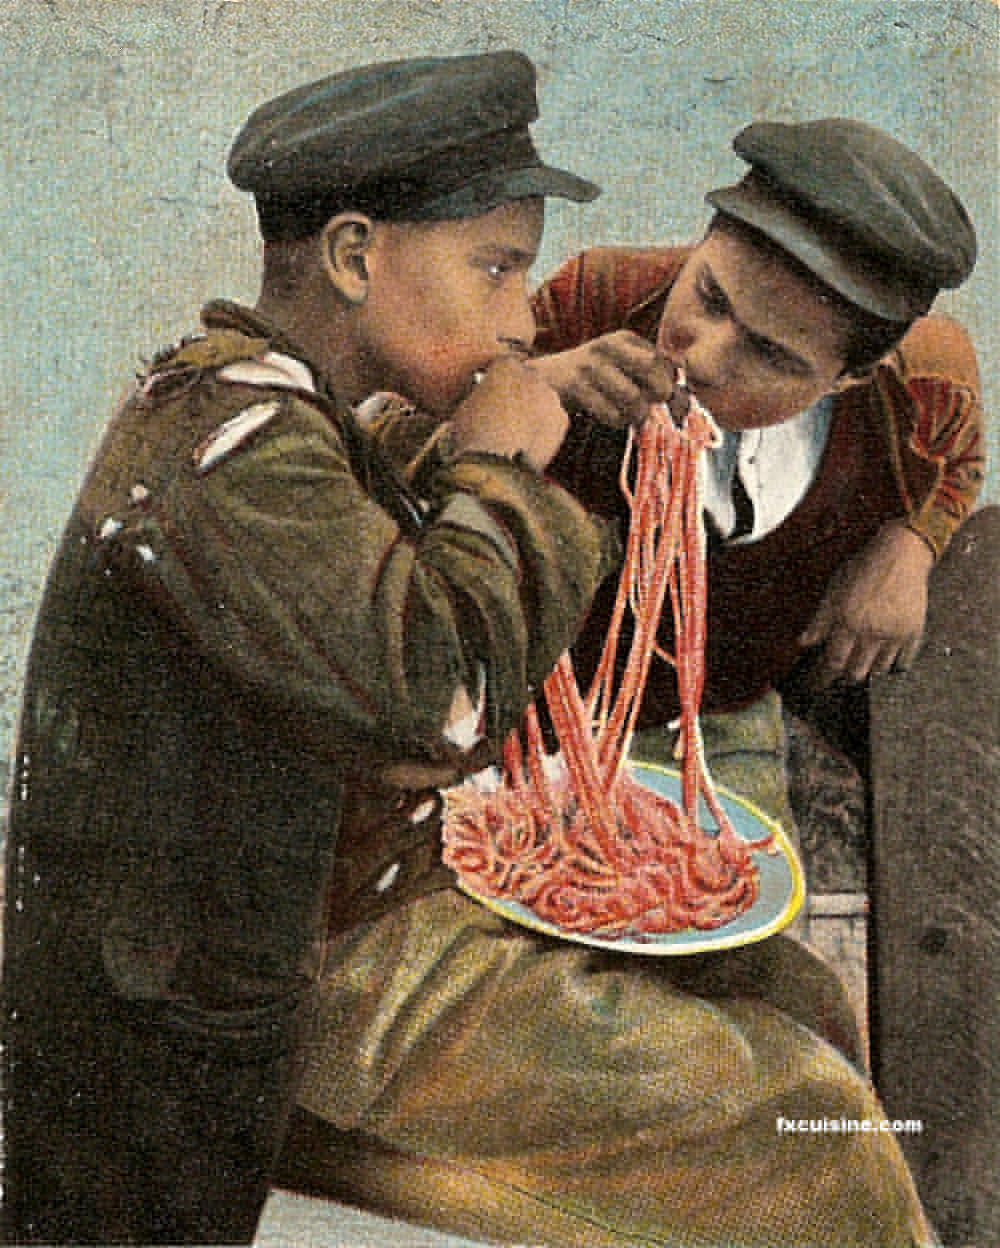 衝撃 イタリア人 日本人のパスタの食べ方は酷いねｗｗｗ イタリア人のパスタの食べ方がこちらｗｗｗｗｗ 画像あり Newsまとめもりー 2chまとめブログ